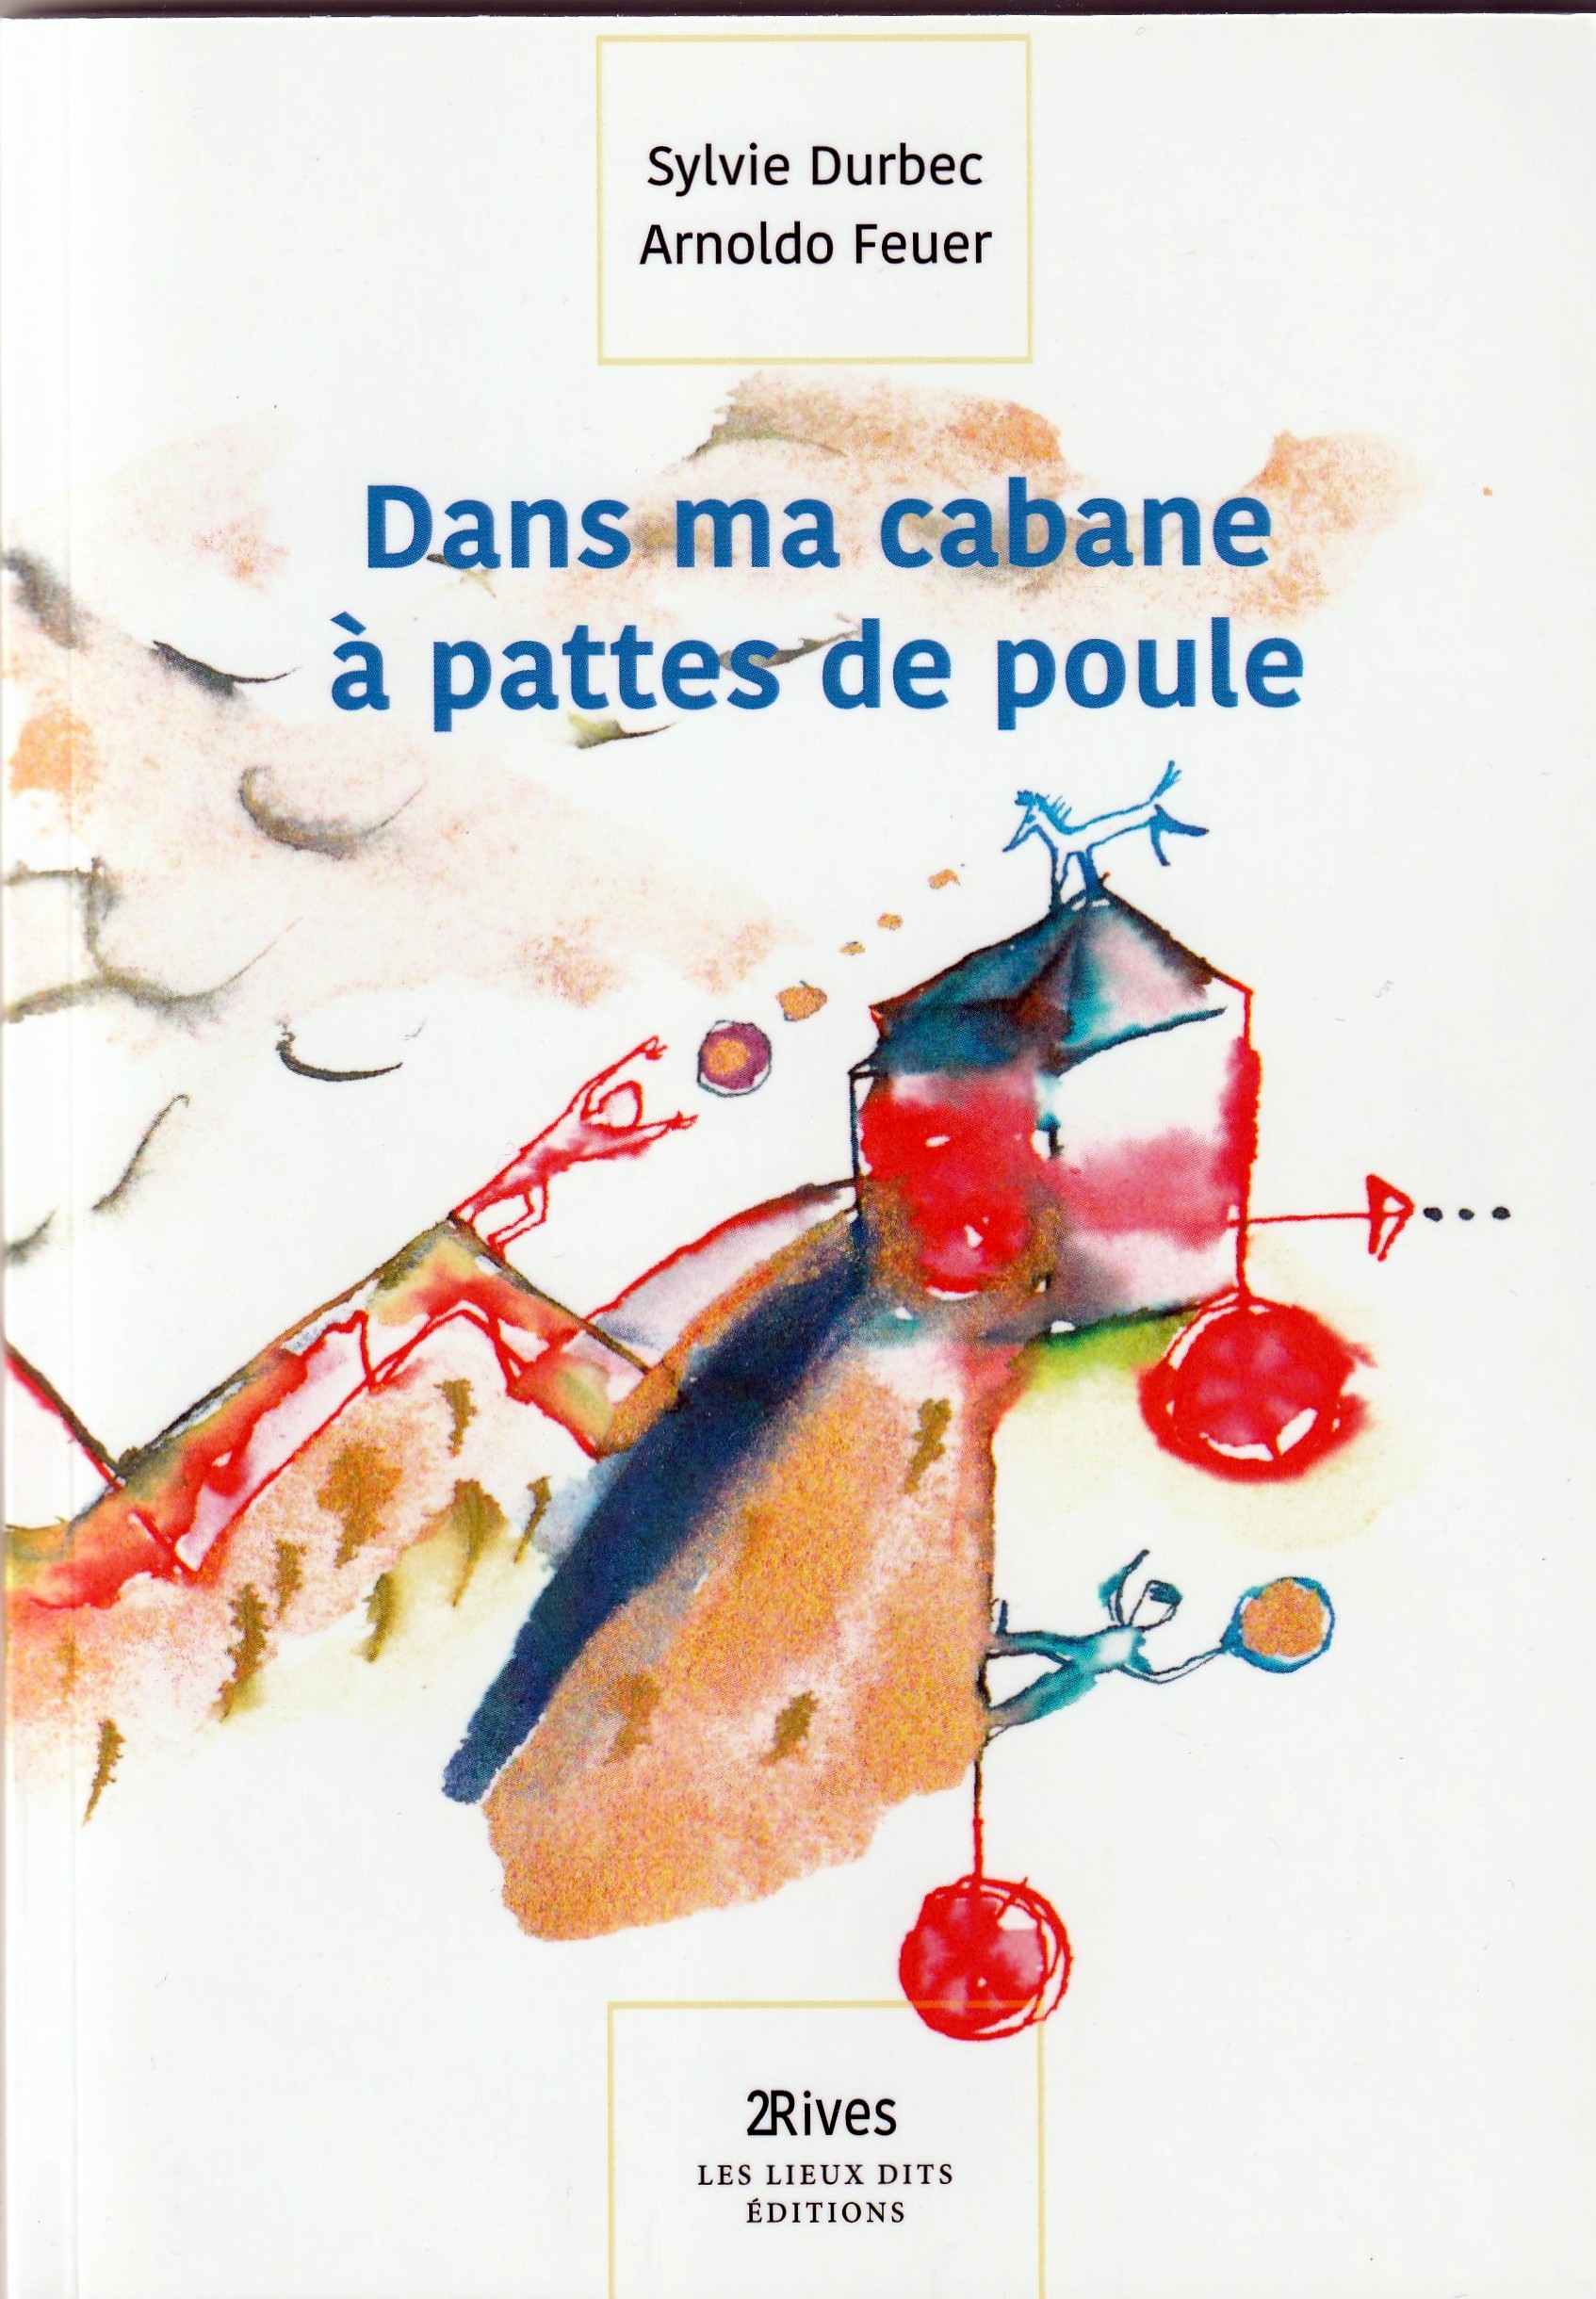 La vie des vers de farine (par Chloé B) - Le blog de ecole-de -thoraise.over-blog.com